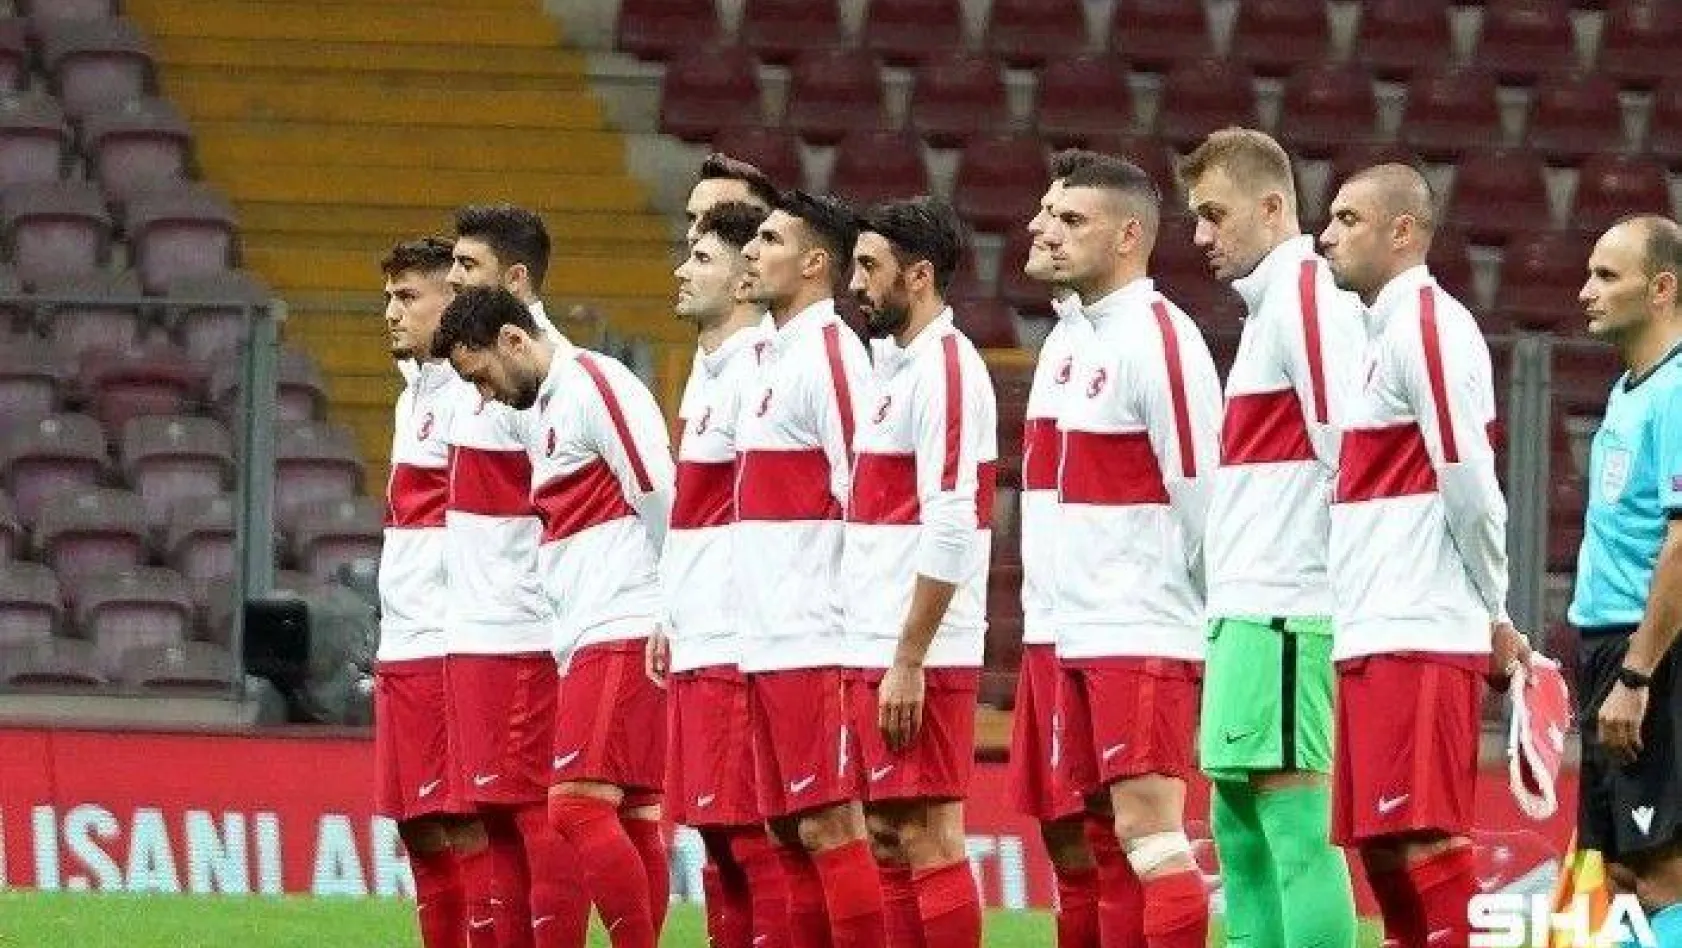 UEFA Uluslar Ligi: Türkiye: 0 - Sırbistan: 0 (Maç devam ediyor)